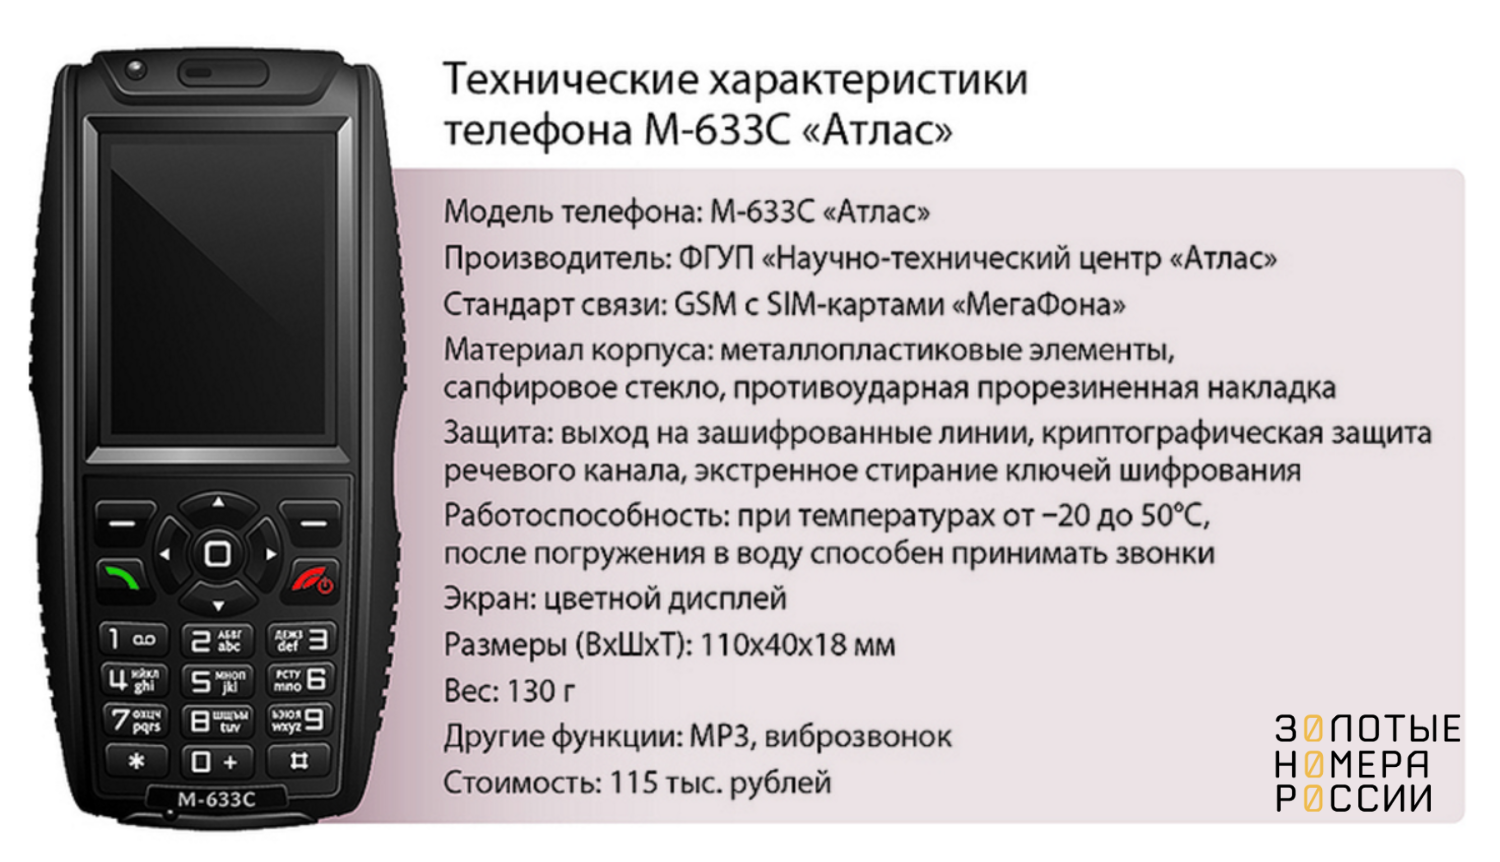 Сотовый телефон М-663С Атлас<br>